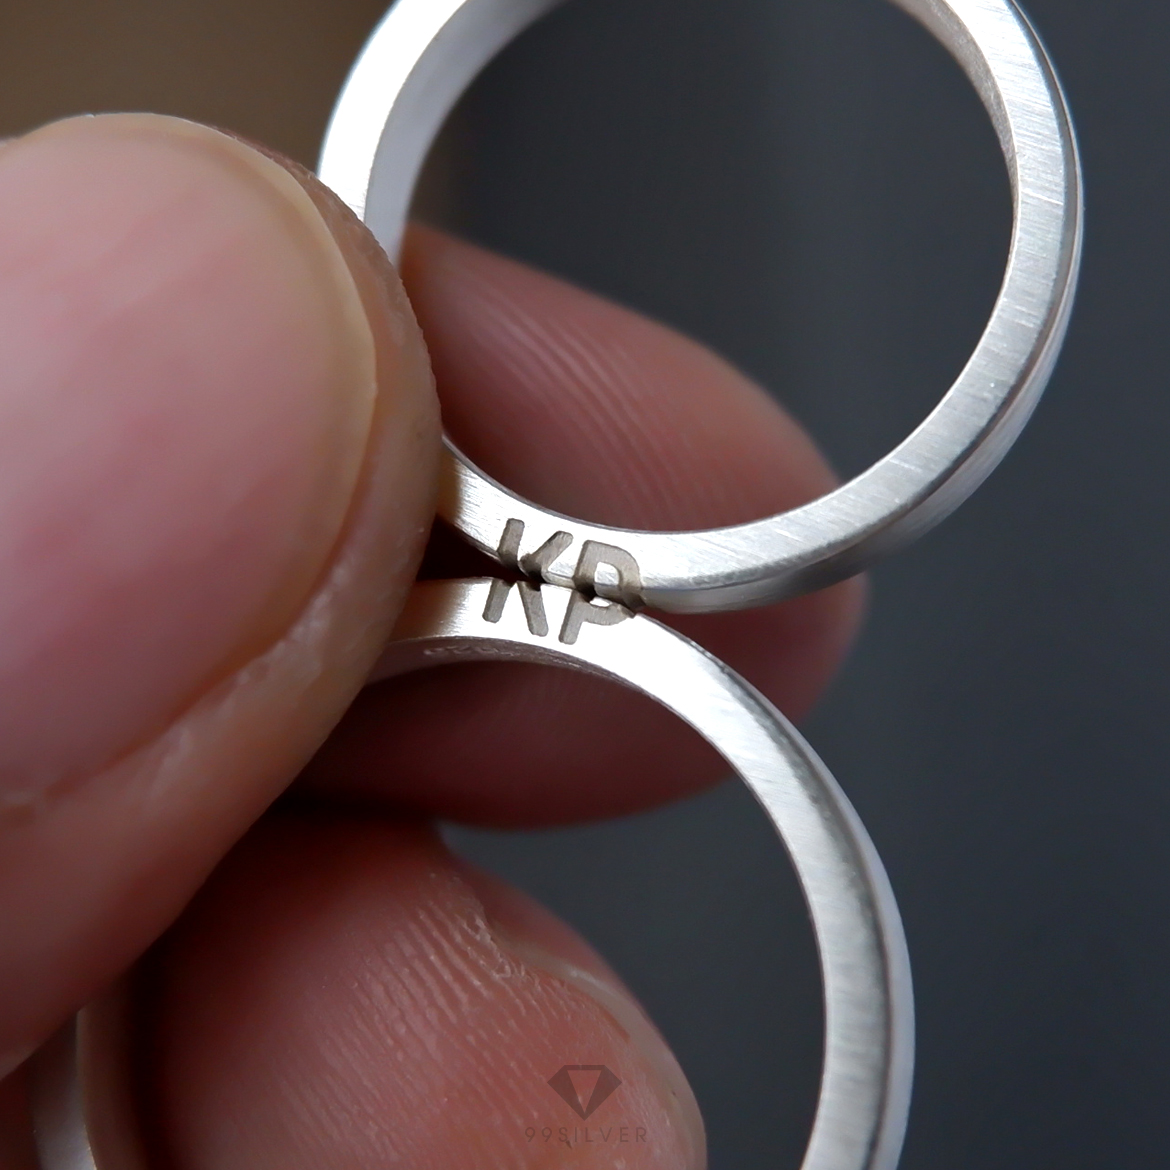 แหวนอักษรประกบ เซ็ตคู่สองวง เมื่อนำมาต่อกันจะได้เป็นอักษรพอดี